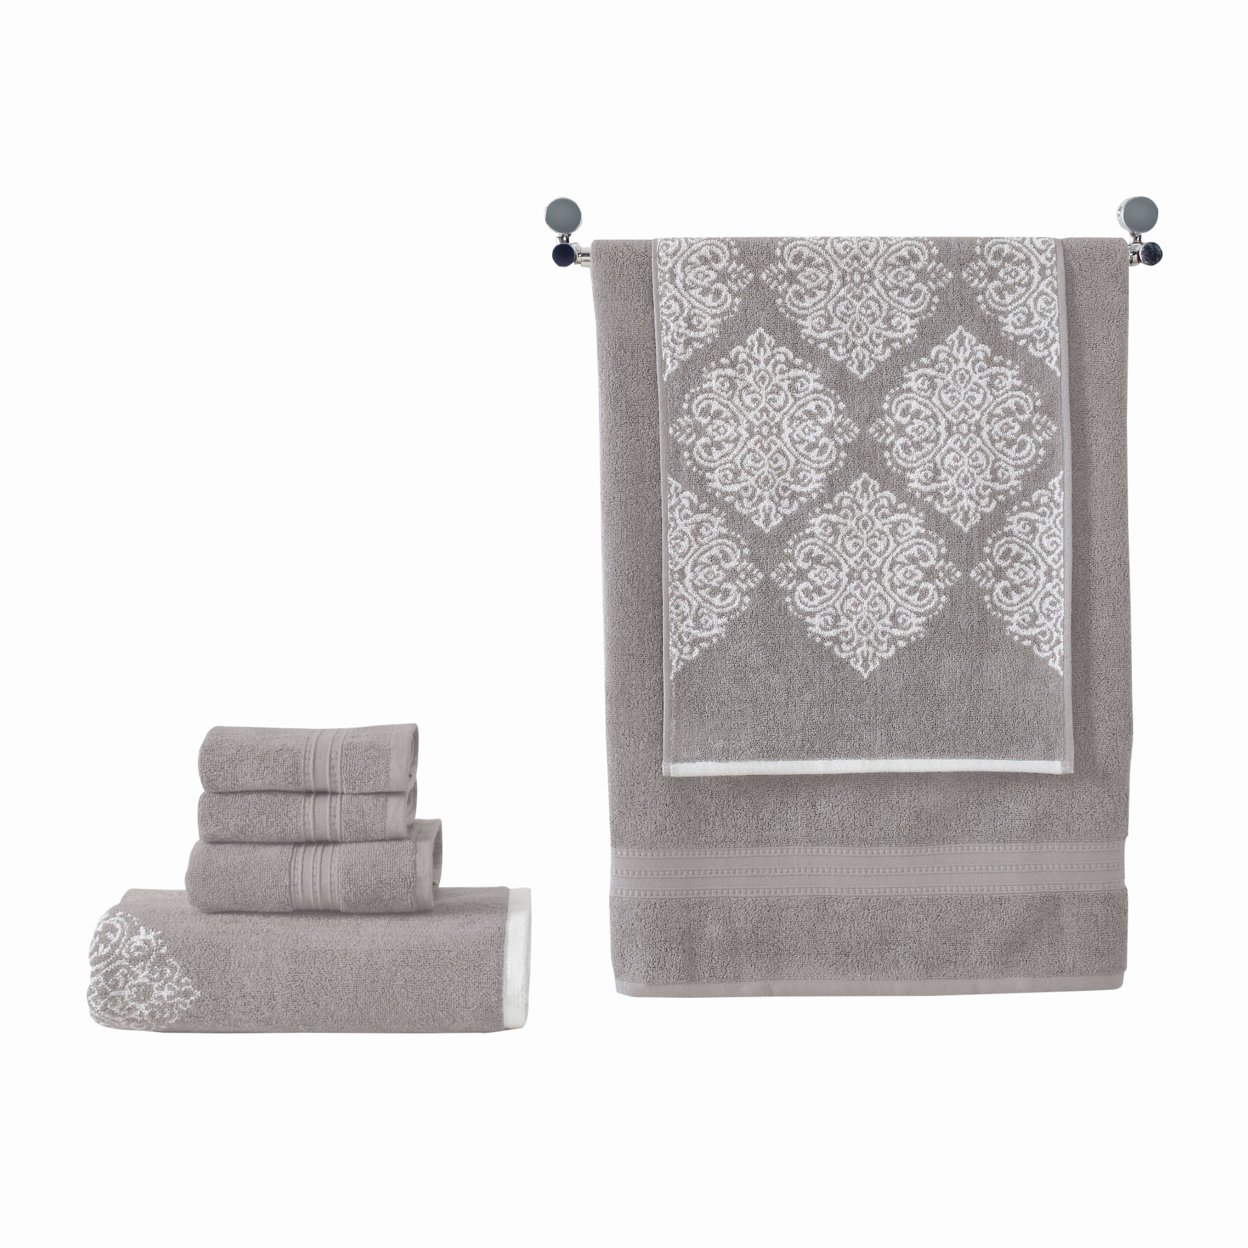 Eula Modern 6 Piece Cotton Towel Set, Stylish Damask Pattern, Light Gray- Saltoro Sherpi